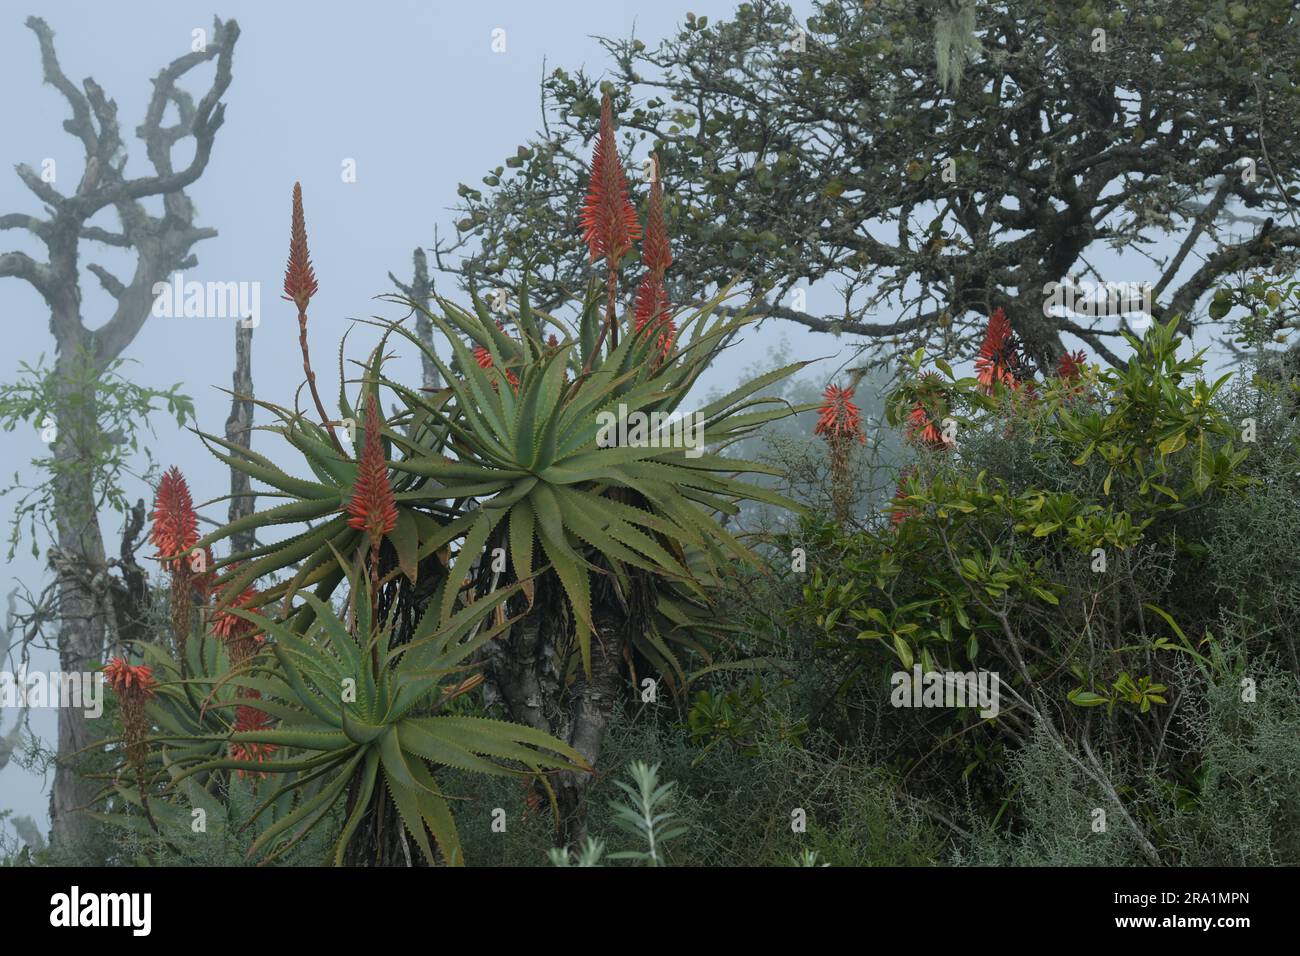 Bel arbre succulent, plante indigène, Krantz Aloe, Aloe arborescens, plante médicinale, Graskop, Afrique du Sud, dans l'habitat naturel, la beauté dans la nature Banque D'Images